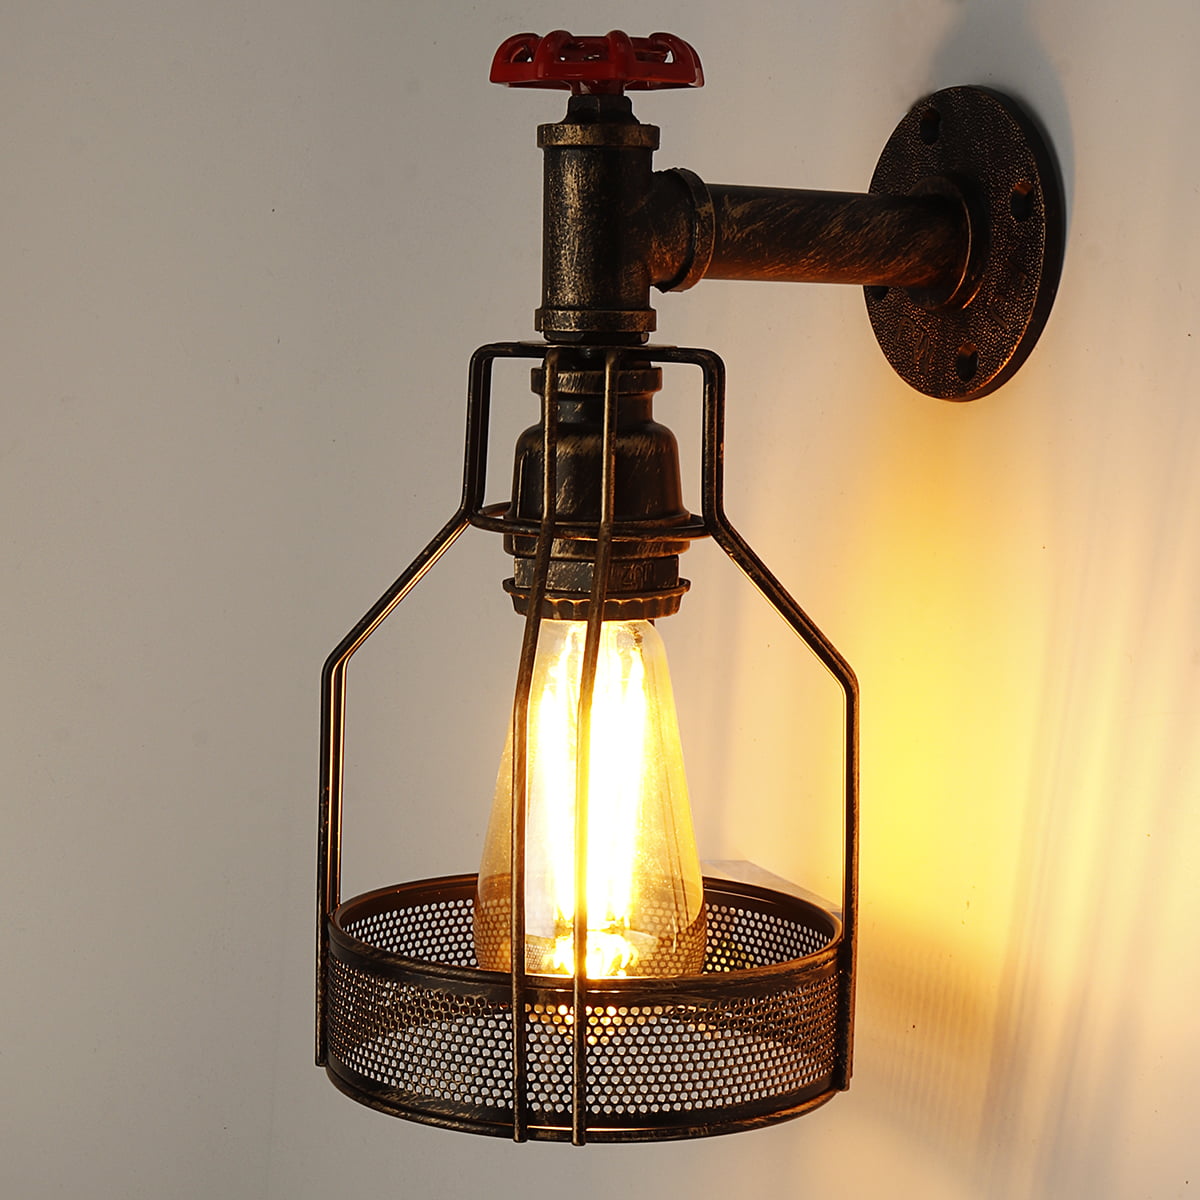 Vintage Industrial Rustic Steampunk Wall Lamp Sconce Metal Waterpipe Wall Lights